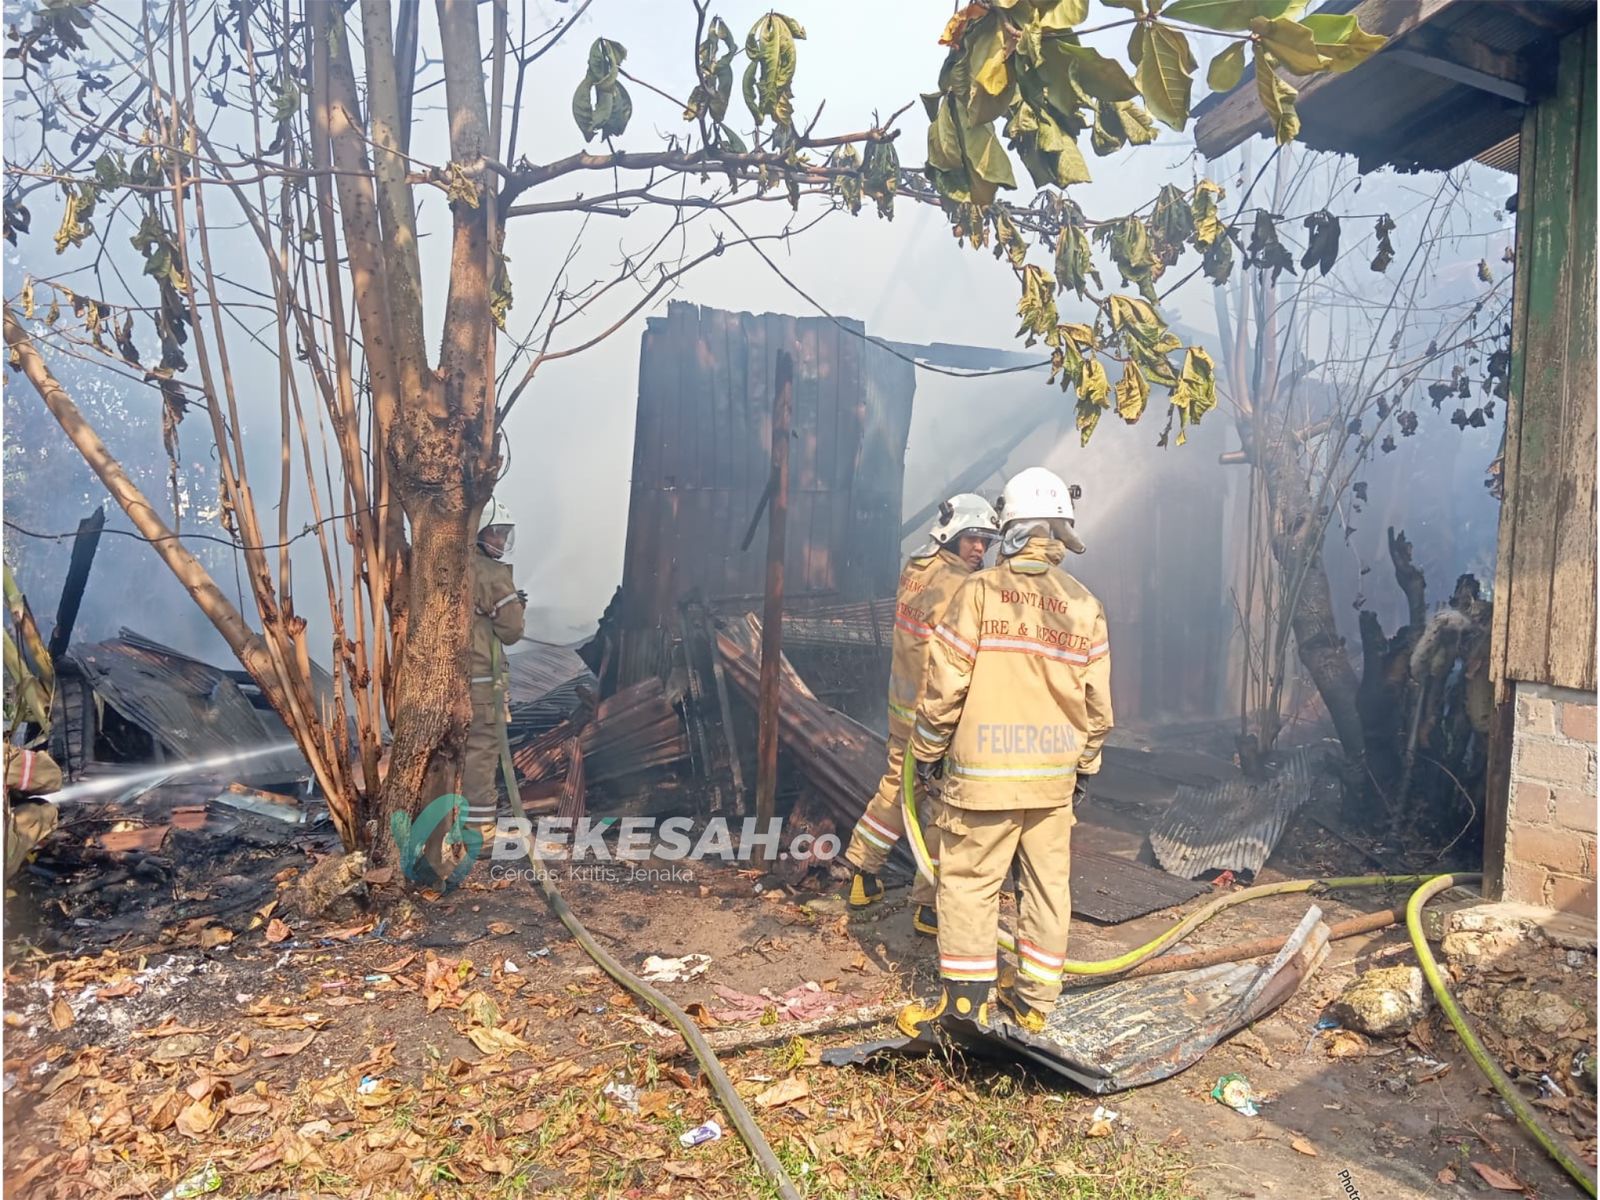 Rumah di Berbas Tengah Kebakaran, 7 Unit Mobil Damkar Dikerahkan